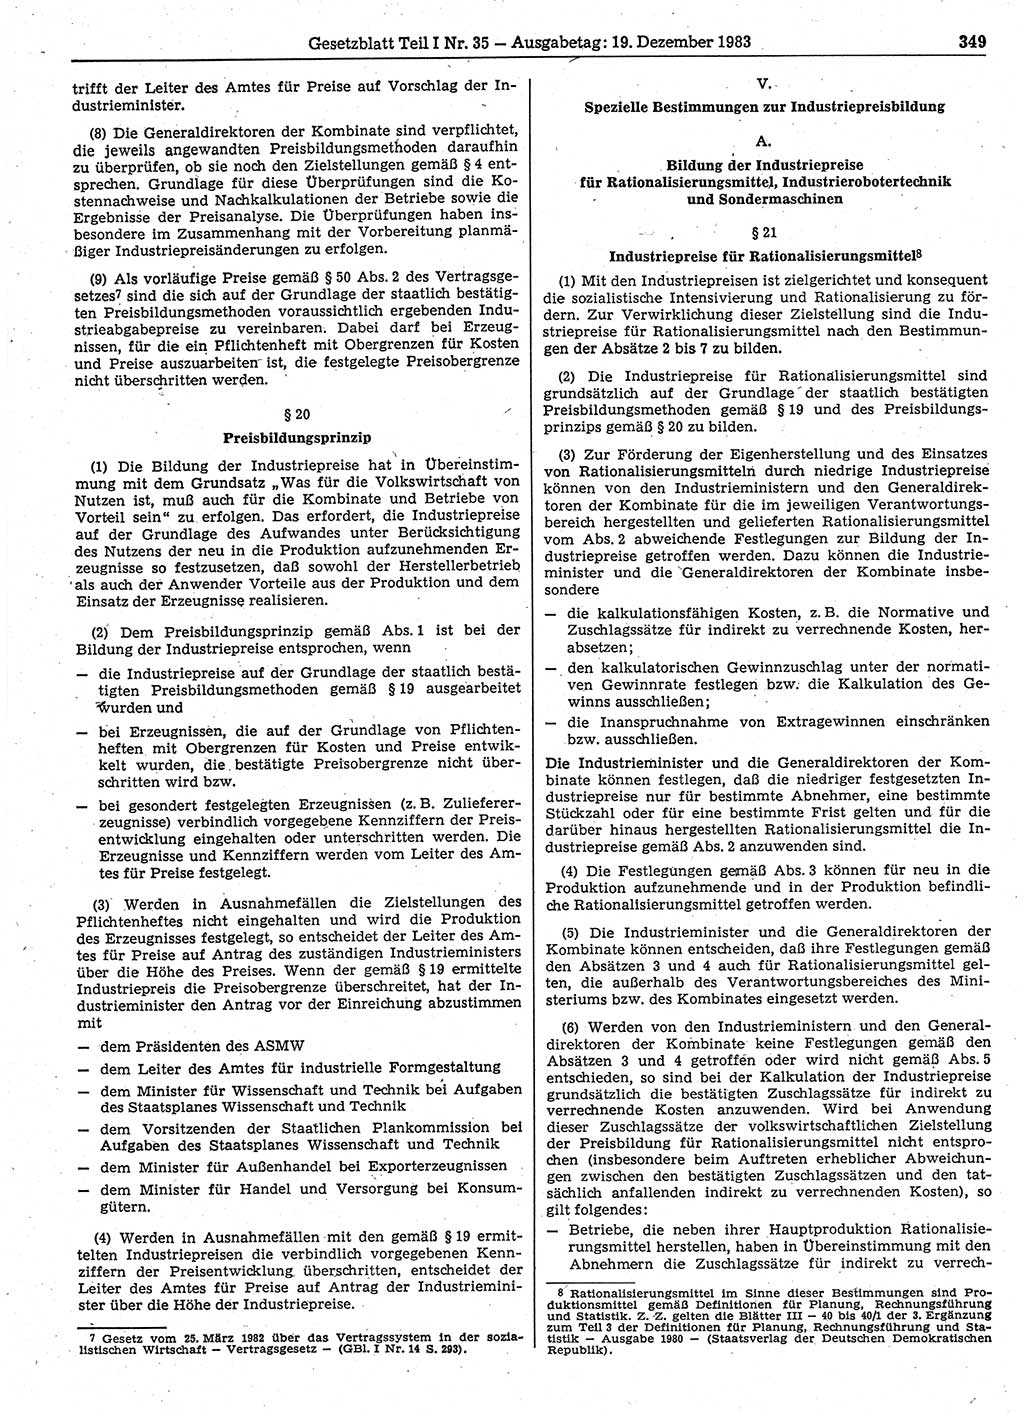 Gesetzblatt (GBl.) der Deutschen Demokratischen Republik (DDR) Teil Ⅰ 1983, Seite 349 (GBl. DDR Ⅰ 1983, S. 349)